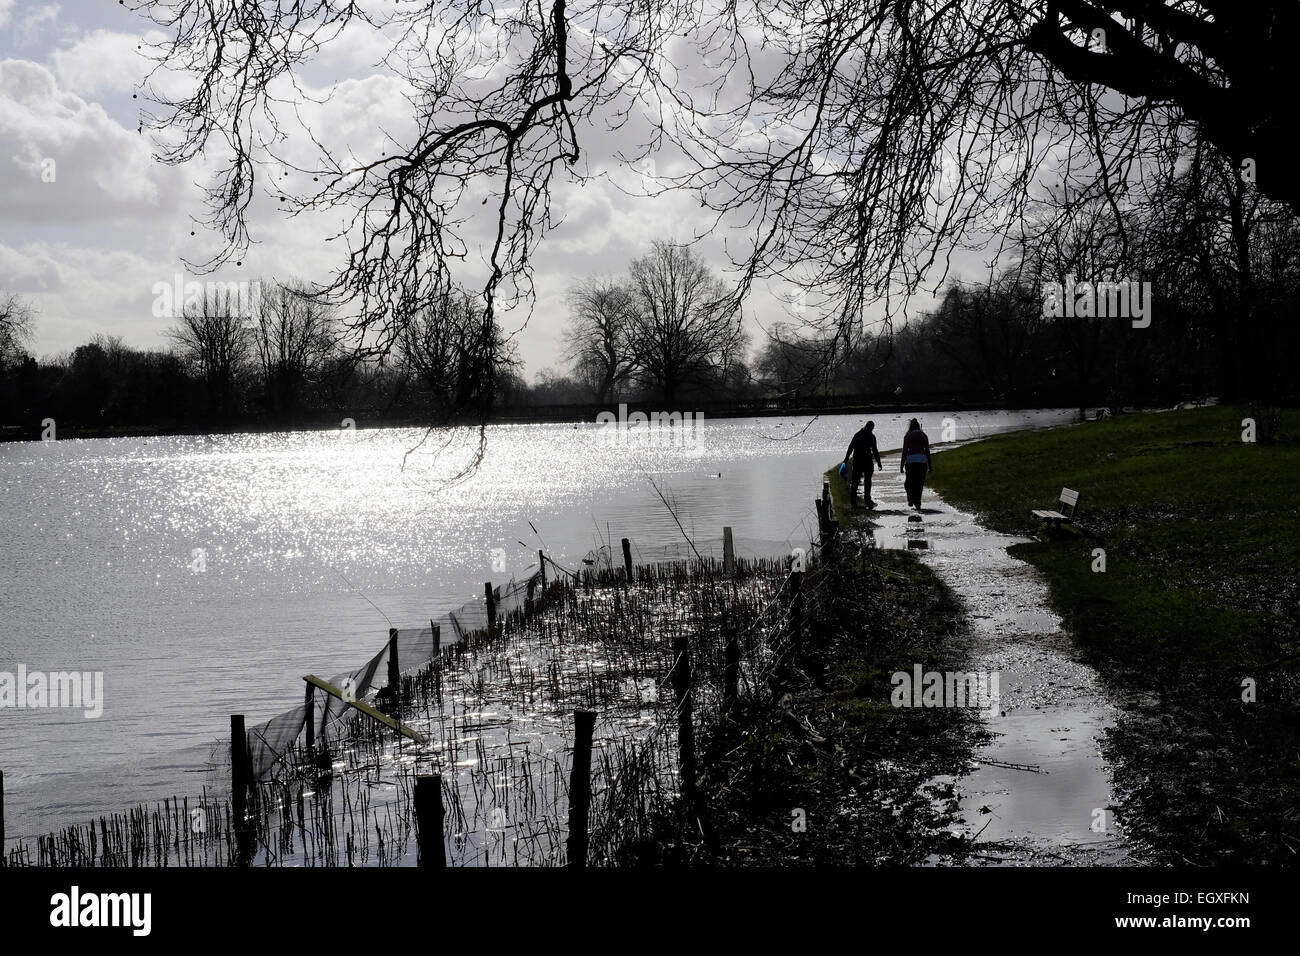 Un couple en silhouette marcher par les étangs, Londres Hampstead Heath Banque D'Images